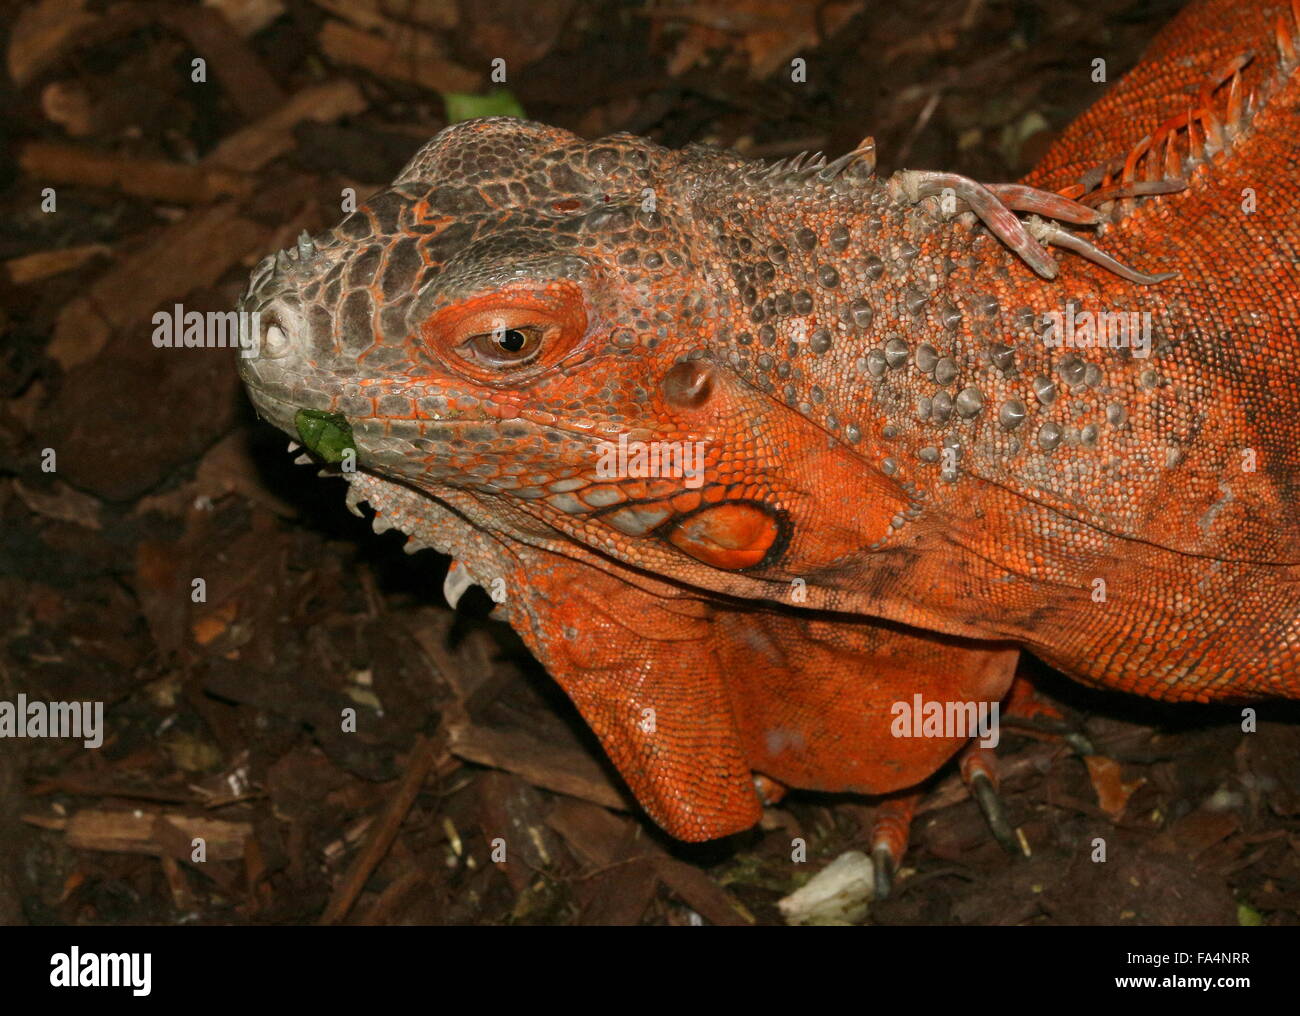 América del Sur y Central iguana verde (Iguana iguana), variedad de color naranja, típicamente encontrados en México Foto de stock